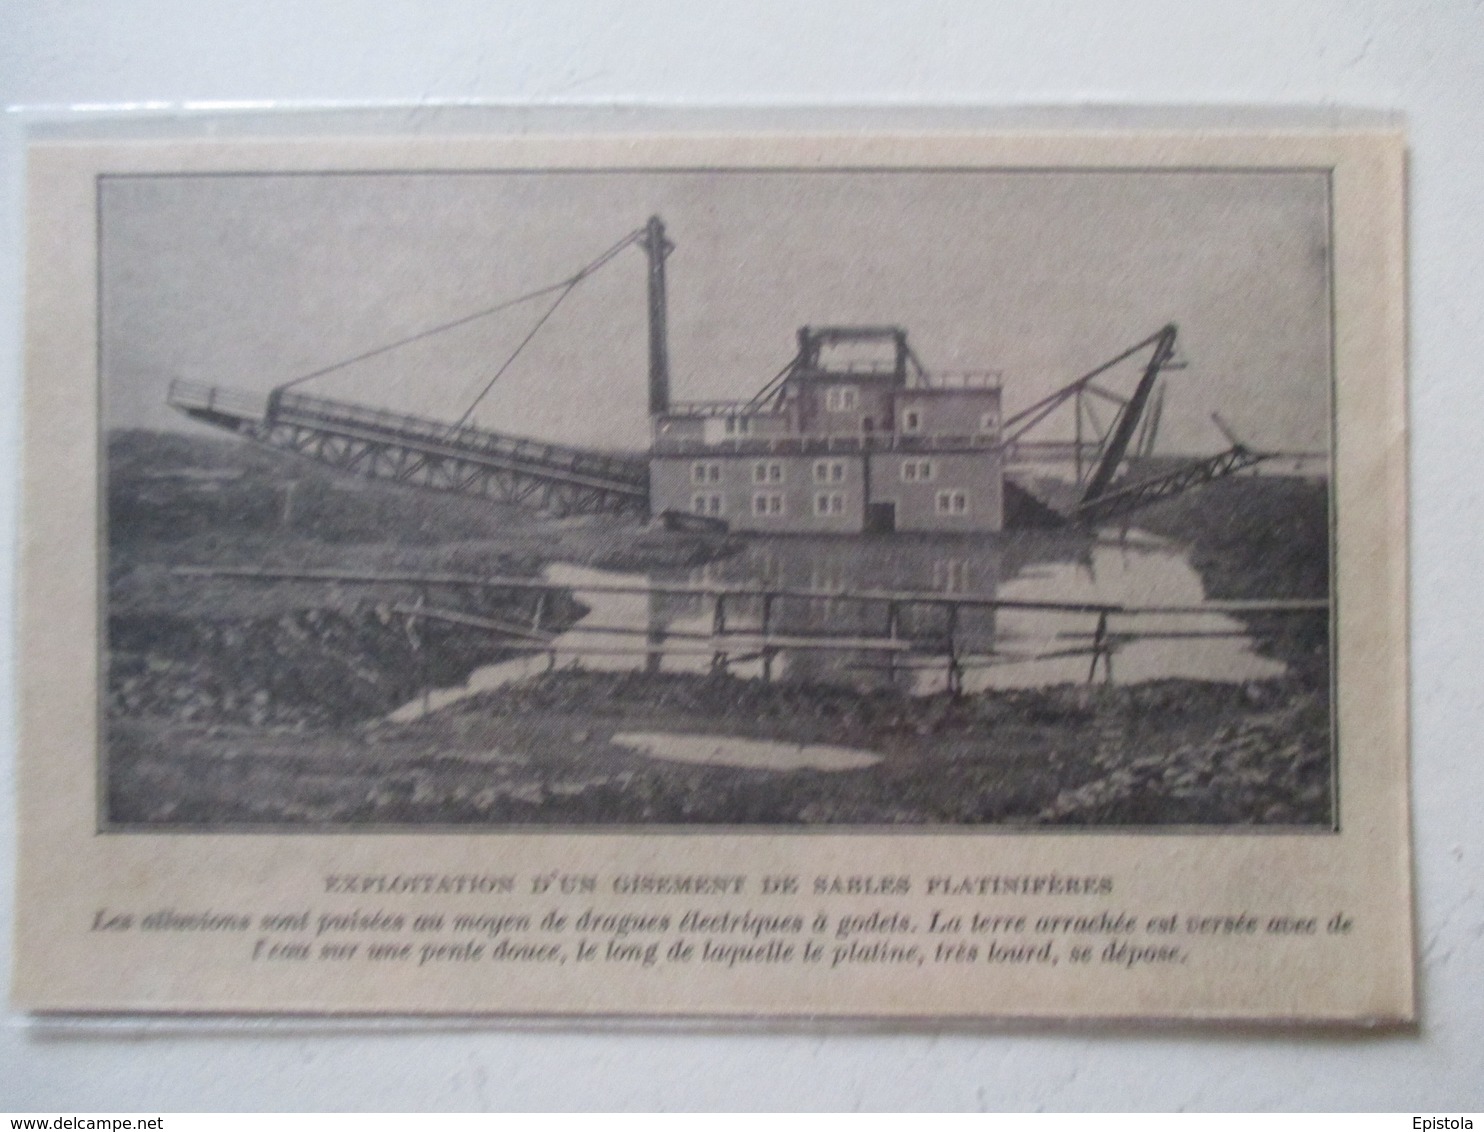 Sverdlovsk (en Russie) Свердло́вская  -   Drageuse électrique à Godets  -  Coupure De Presse De 1928 - Other Apparatus